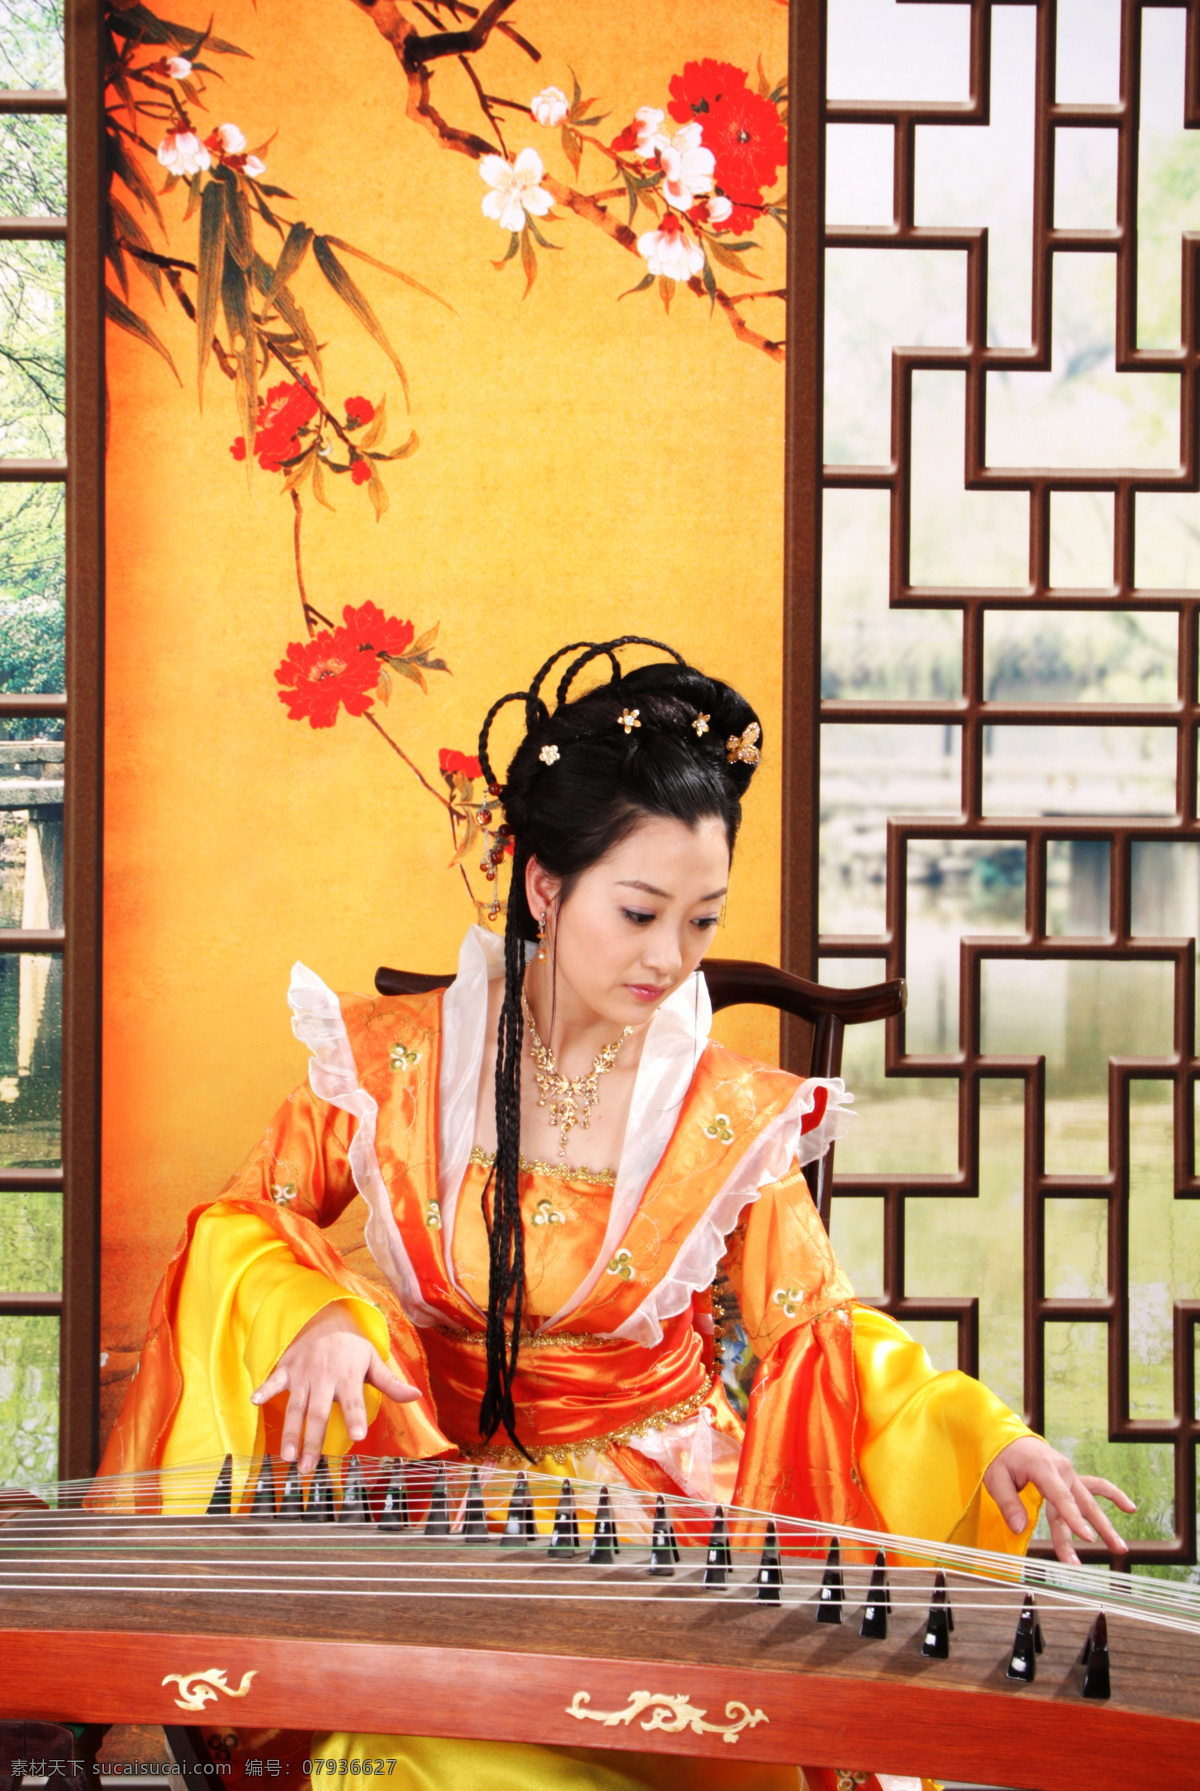 静女奏古筝 古装美女 古筝 中国风 古典风格 文艺元素 女性女人 人物图库